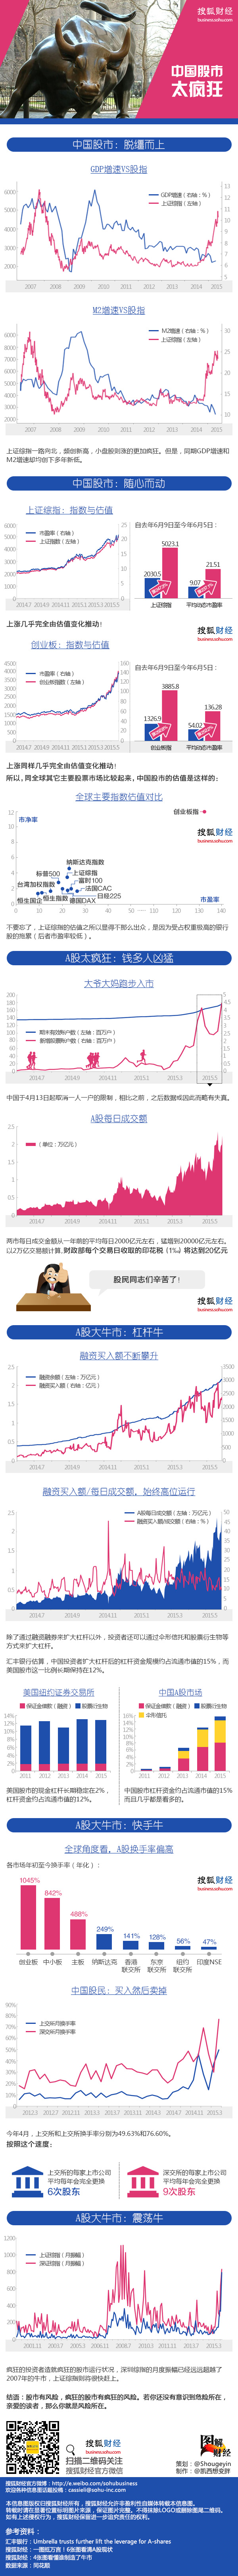 图解财经 240期： 中国股市太疯狂